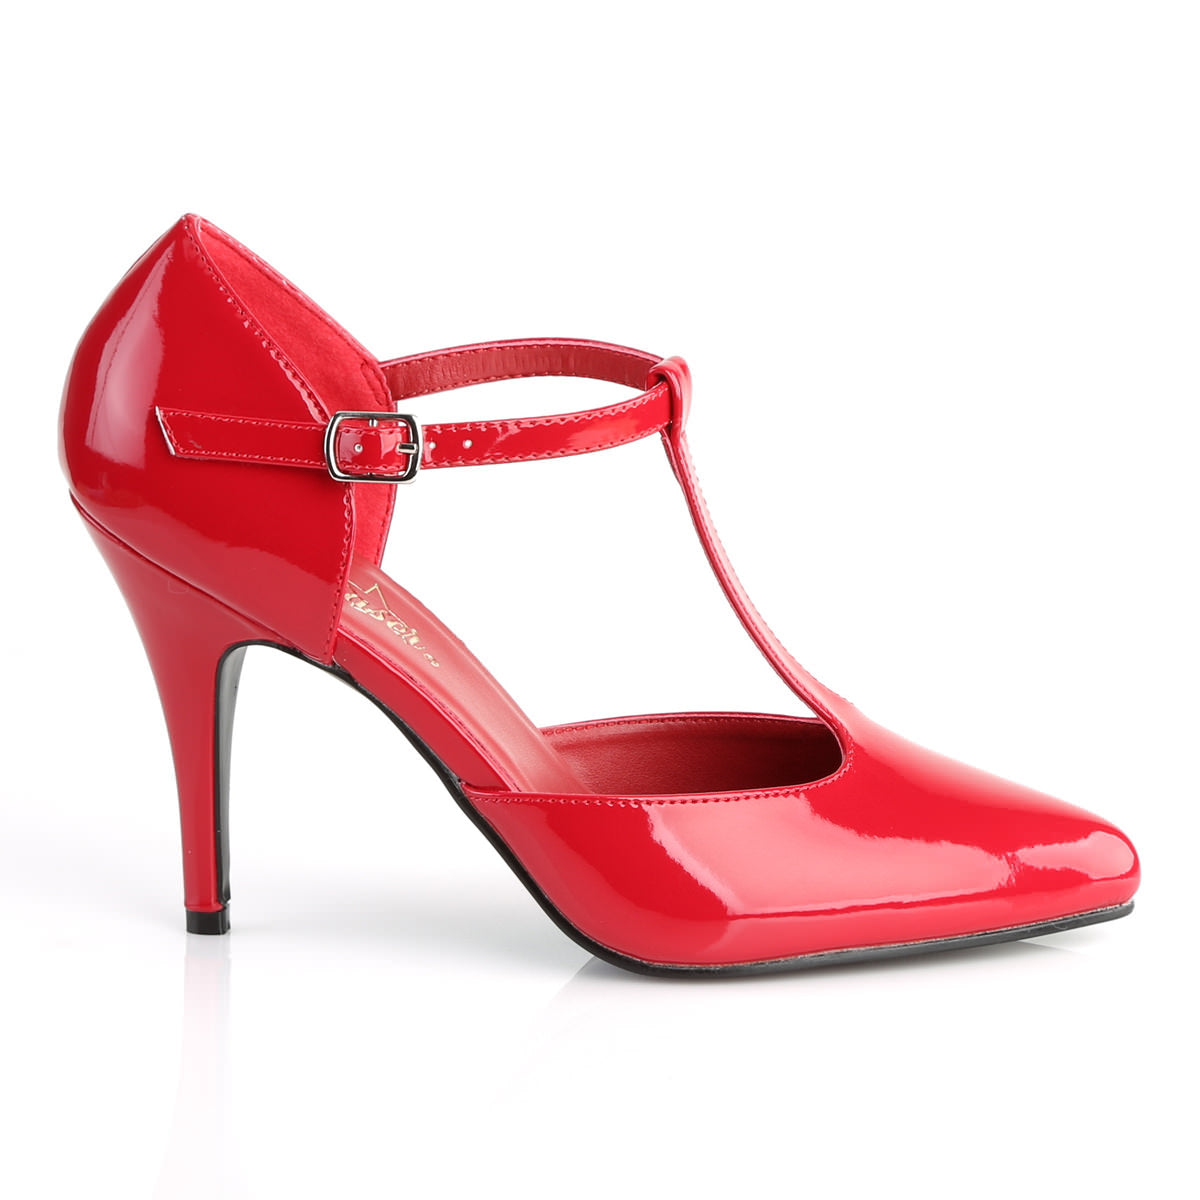 4 Inch Heel VANITY-415 Red Patent